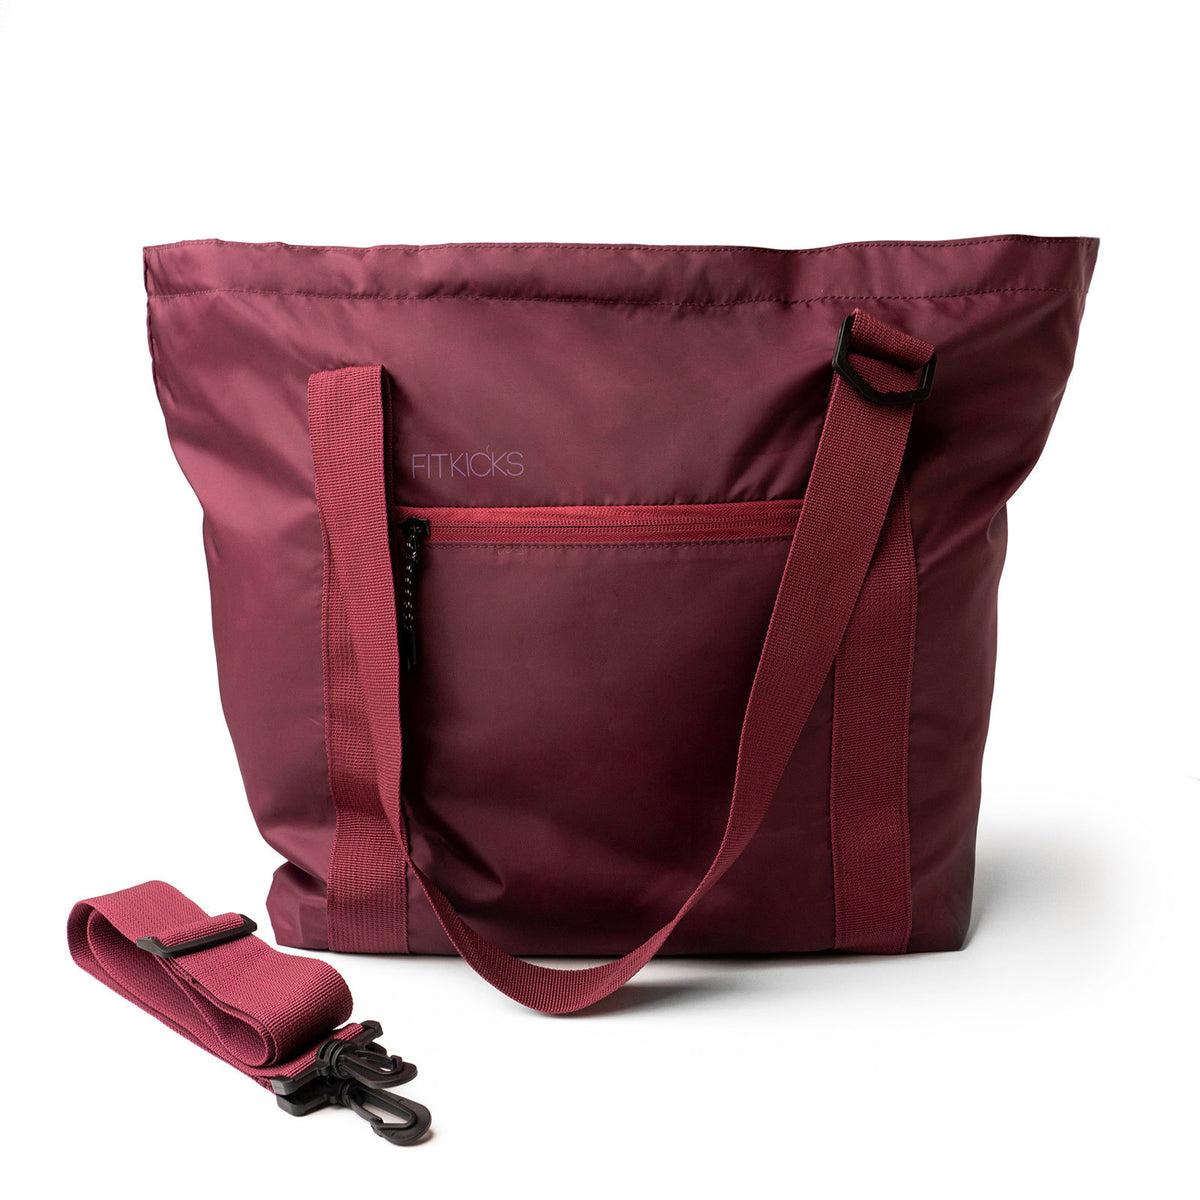 Fitkicks Hideaway Packable Duffle Bag